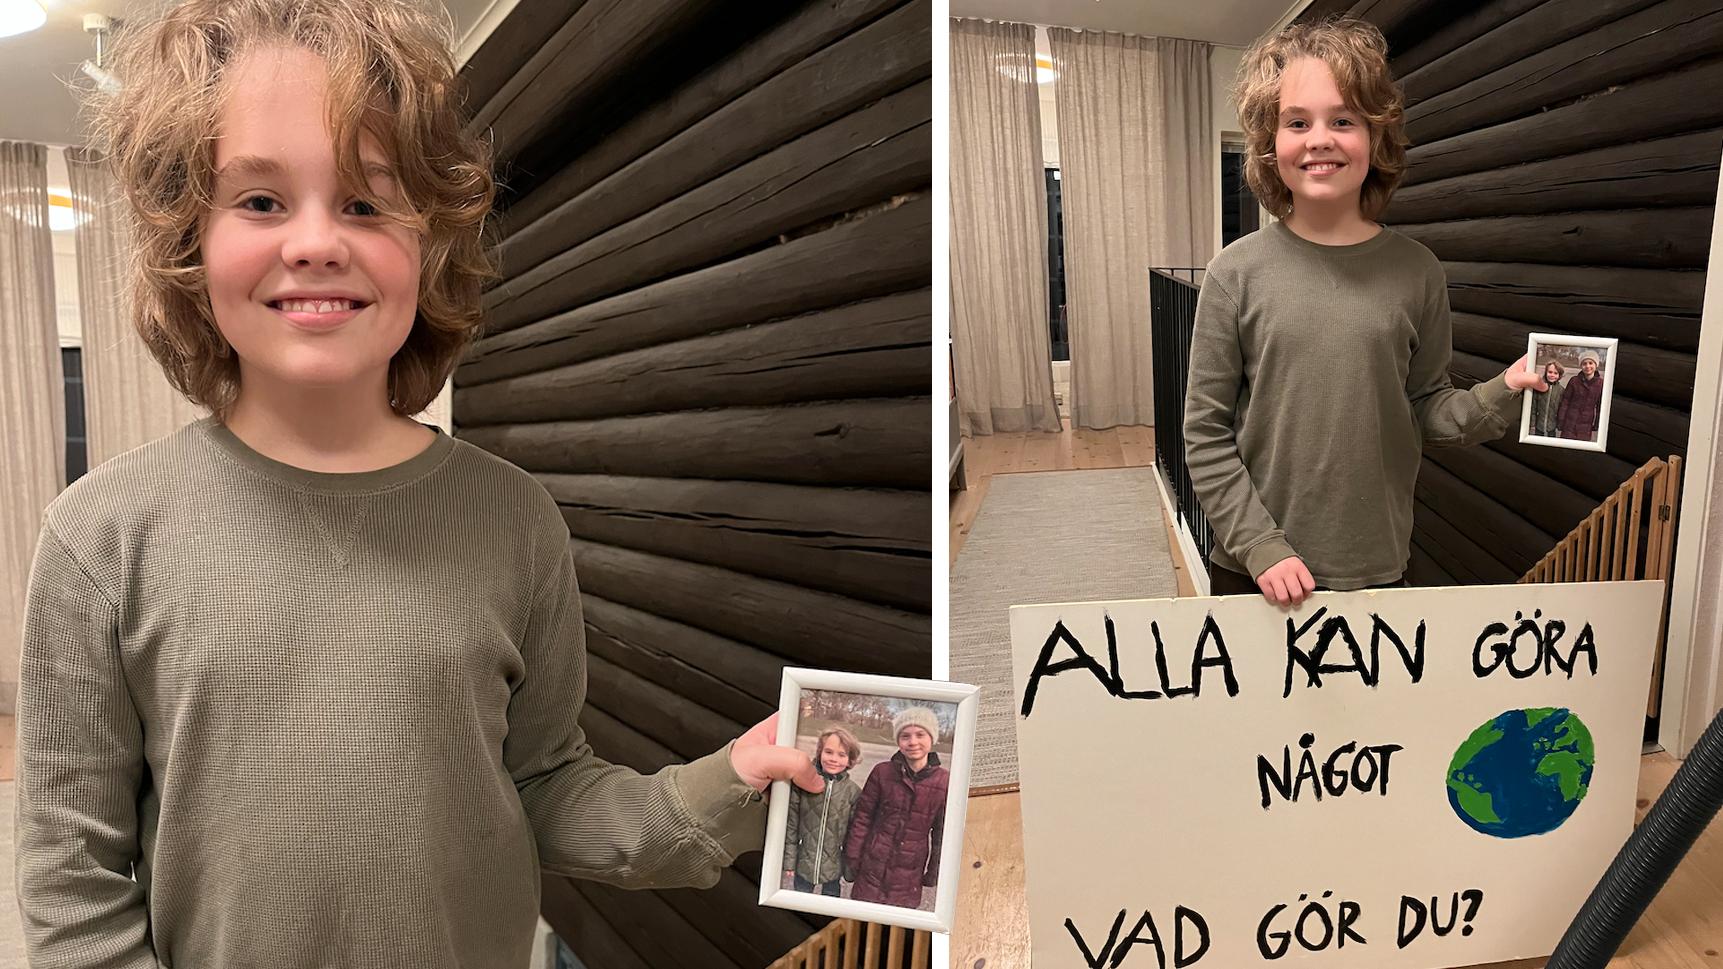 Allan Örtegren träffade Greta Thunberg 2020, flickan som två år tidigare blivit världskänd för sin skolstrejk för klimatet. 